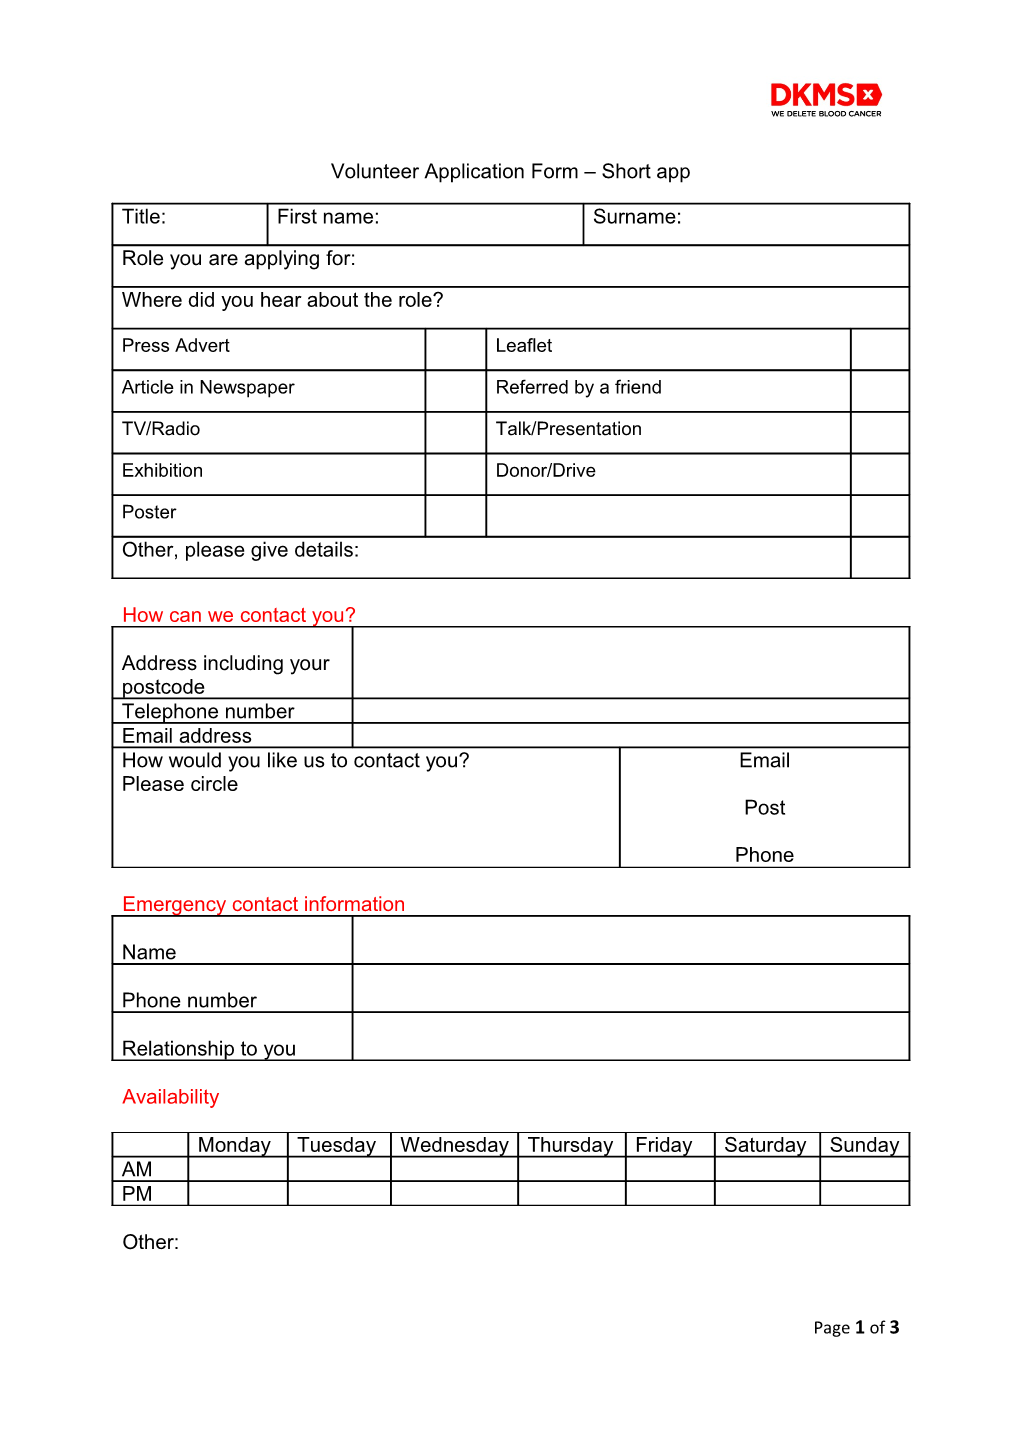 Volunteer Application Form Short App